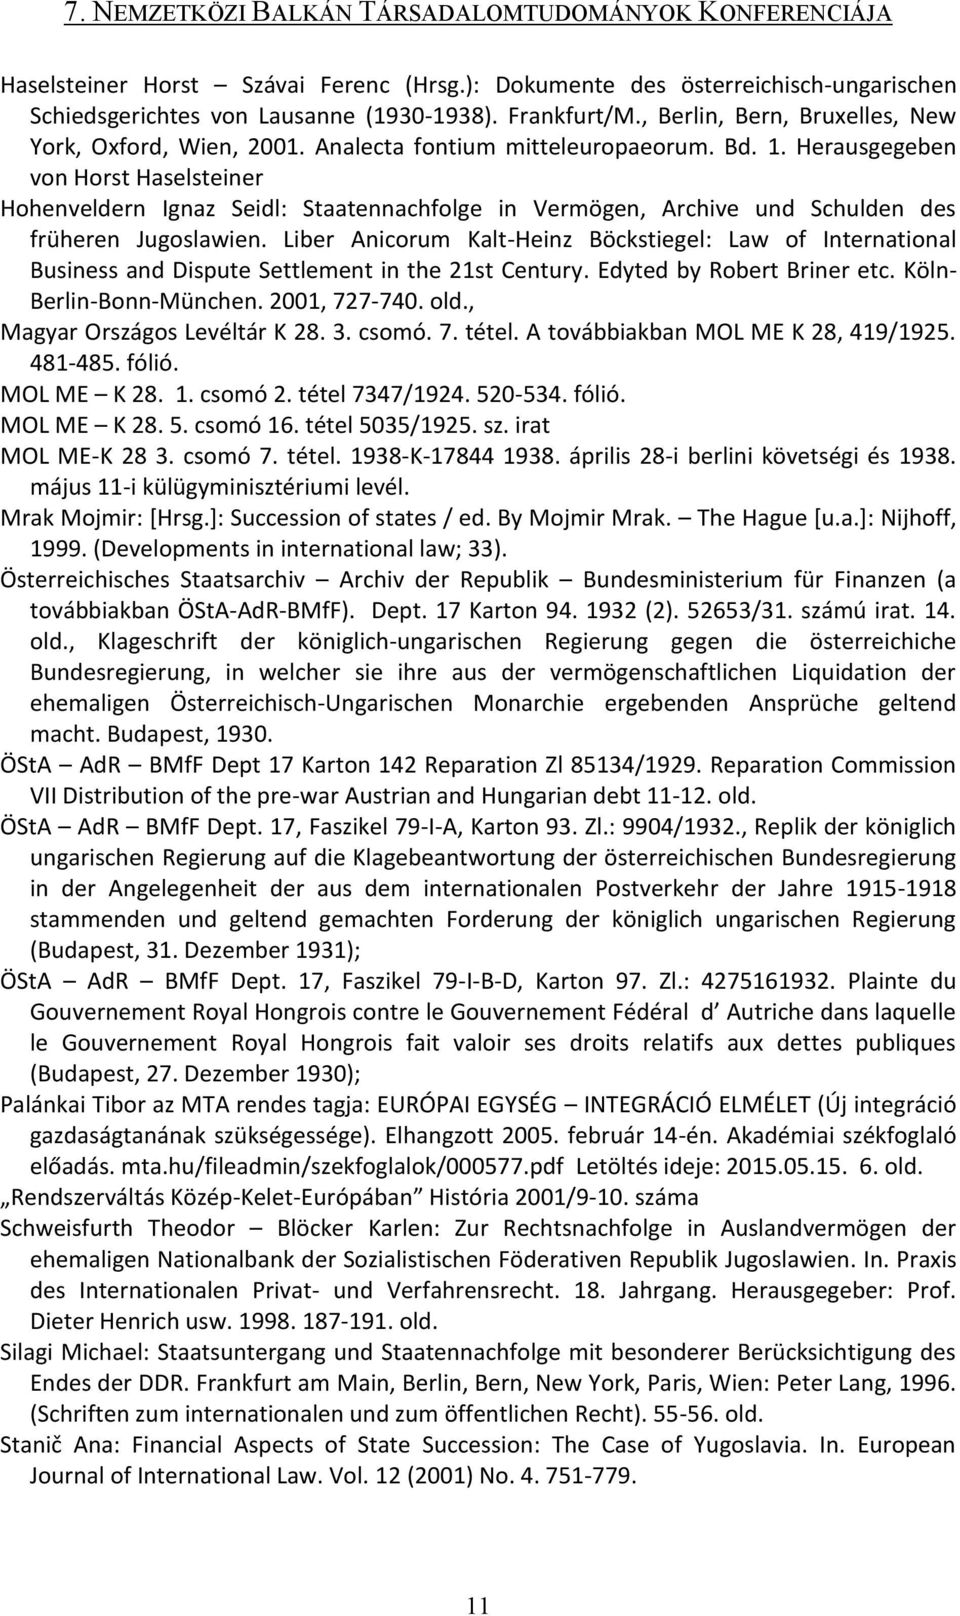 Liber Anicorum Kalt-Heinz Böckstiegel: Law of International Business and Dispute Settlement in the 21st Century. Edyted by Robert Briner etc. Köln- Berlin-Bonn-München. 2001, 727-740. old.